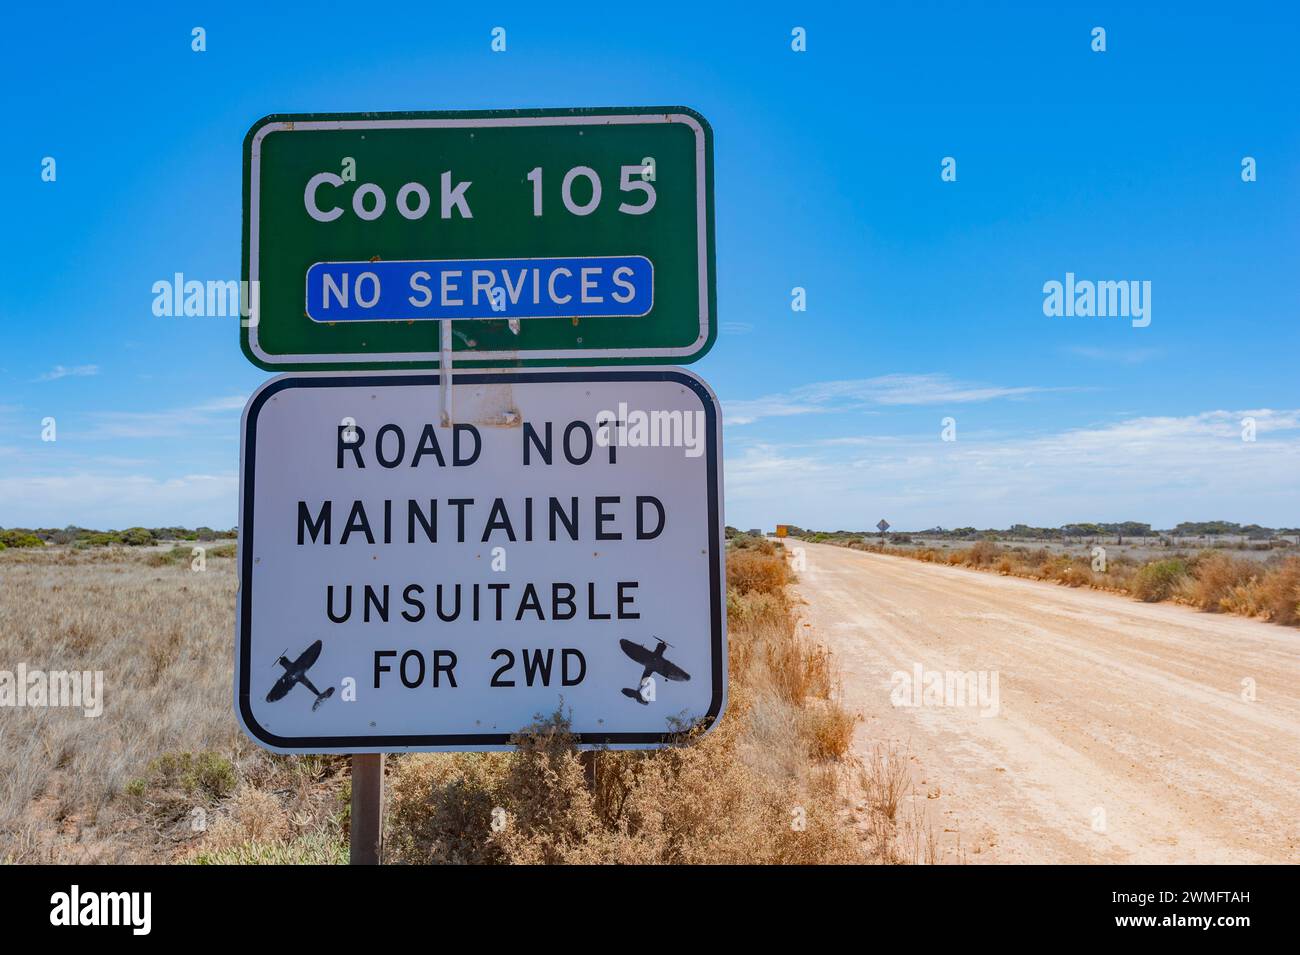 Warnschild für Schotterstraßen auf dem Weg nach Cook, einer abgelegenen ländlichen Stadt im Nullarbor, South Australia, SA, Australien Stockfoto